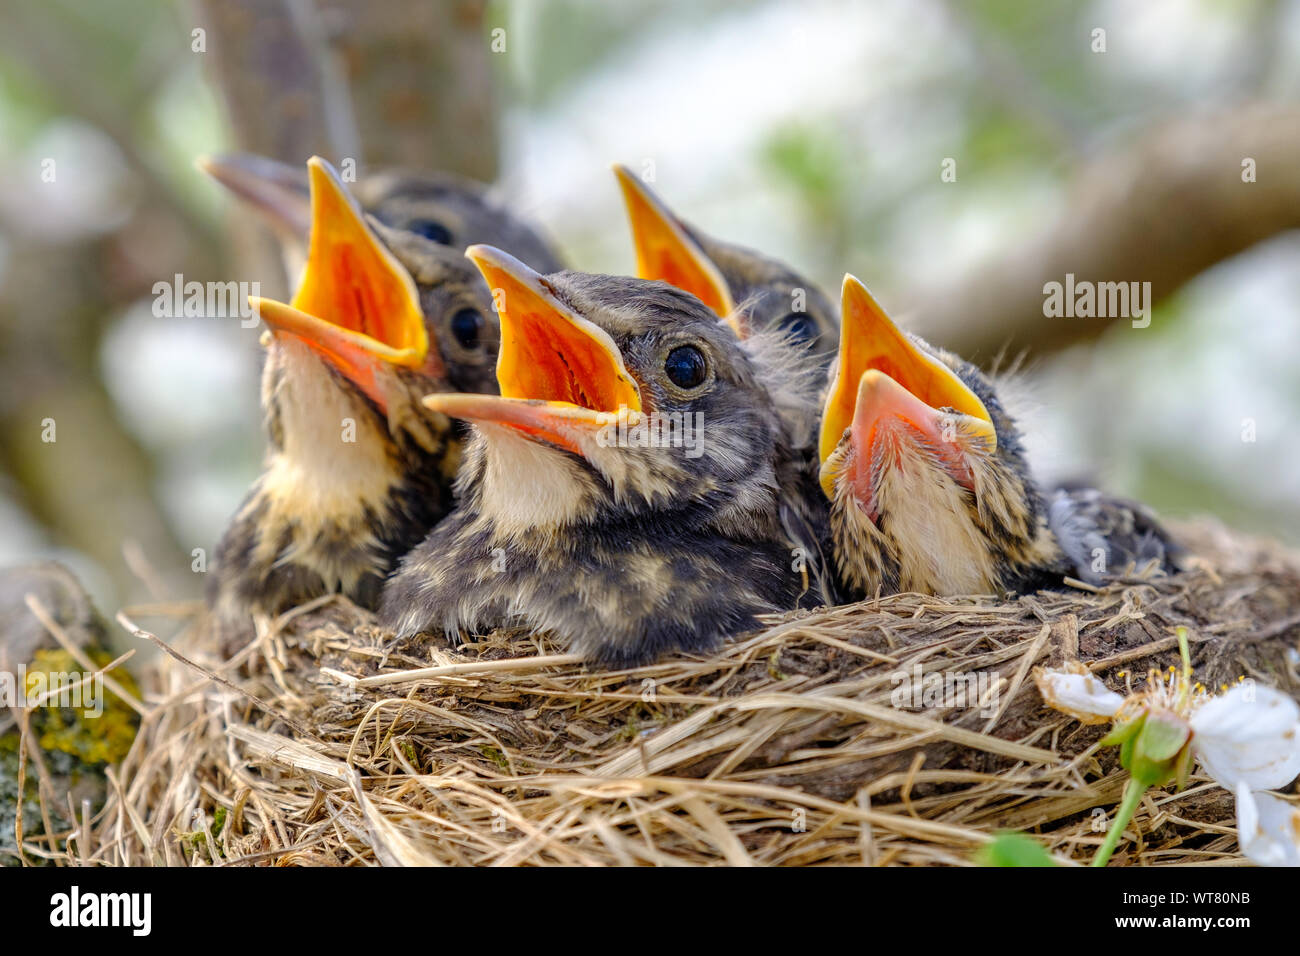 Closeup pajaritos con la boca abierta en el nido. Aves jóvenes con pico naranja, anidando en la fauna silvestre. Foto de stock